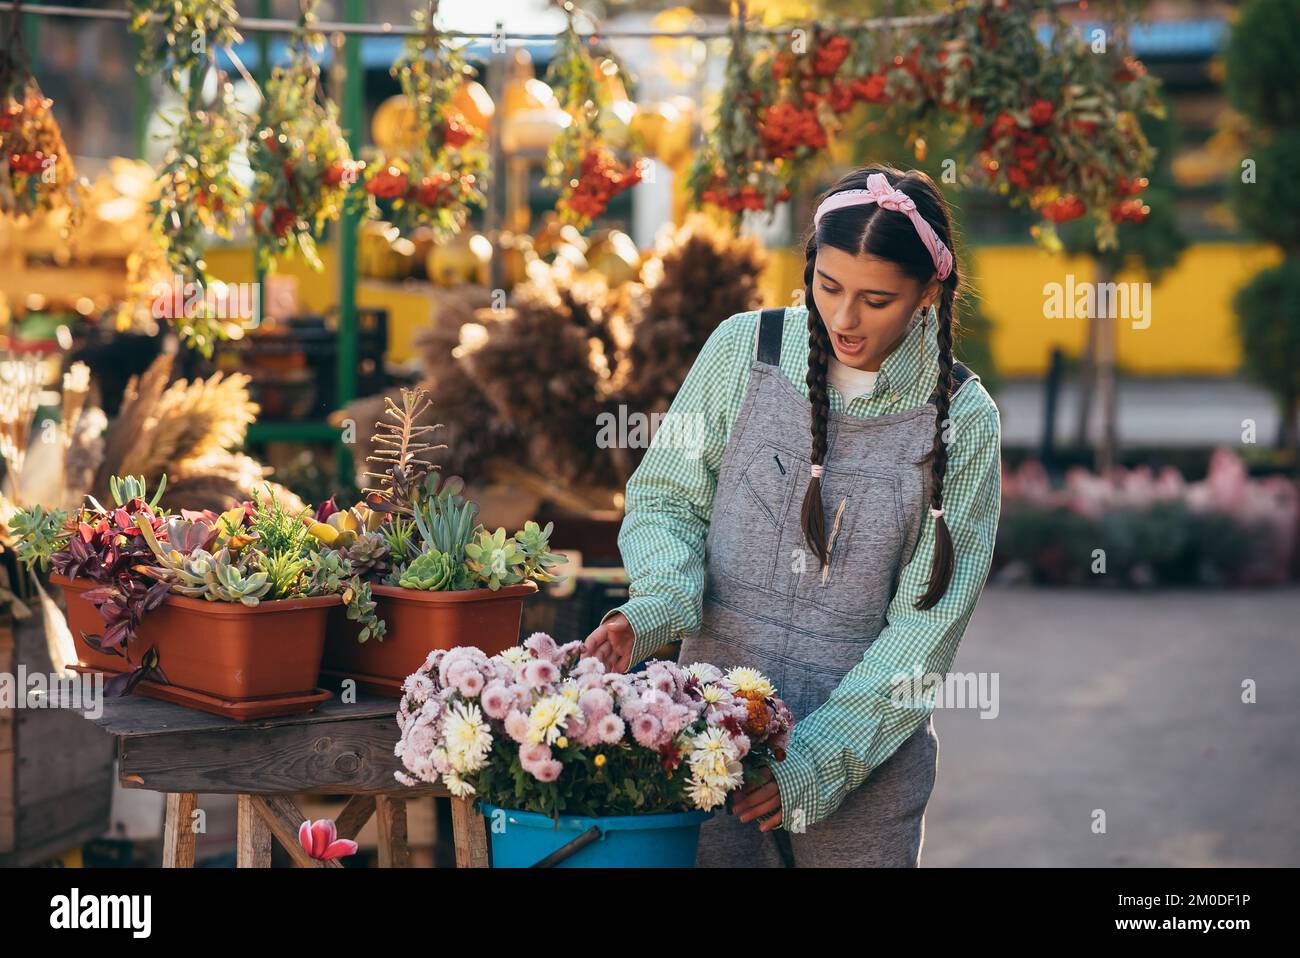 Der Verkauf von Blumen stellt Blumen in einen Eimer zum Verkauf Stockfoto